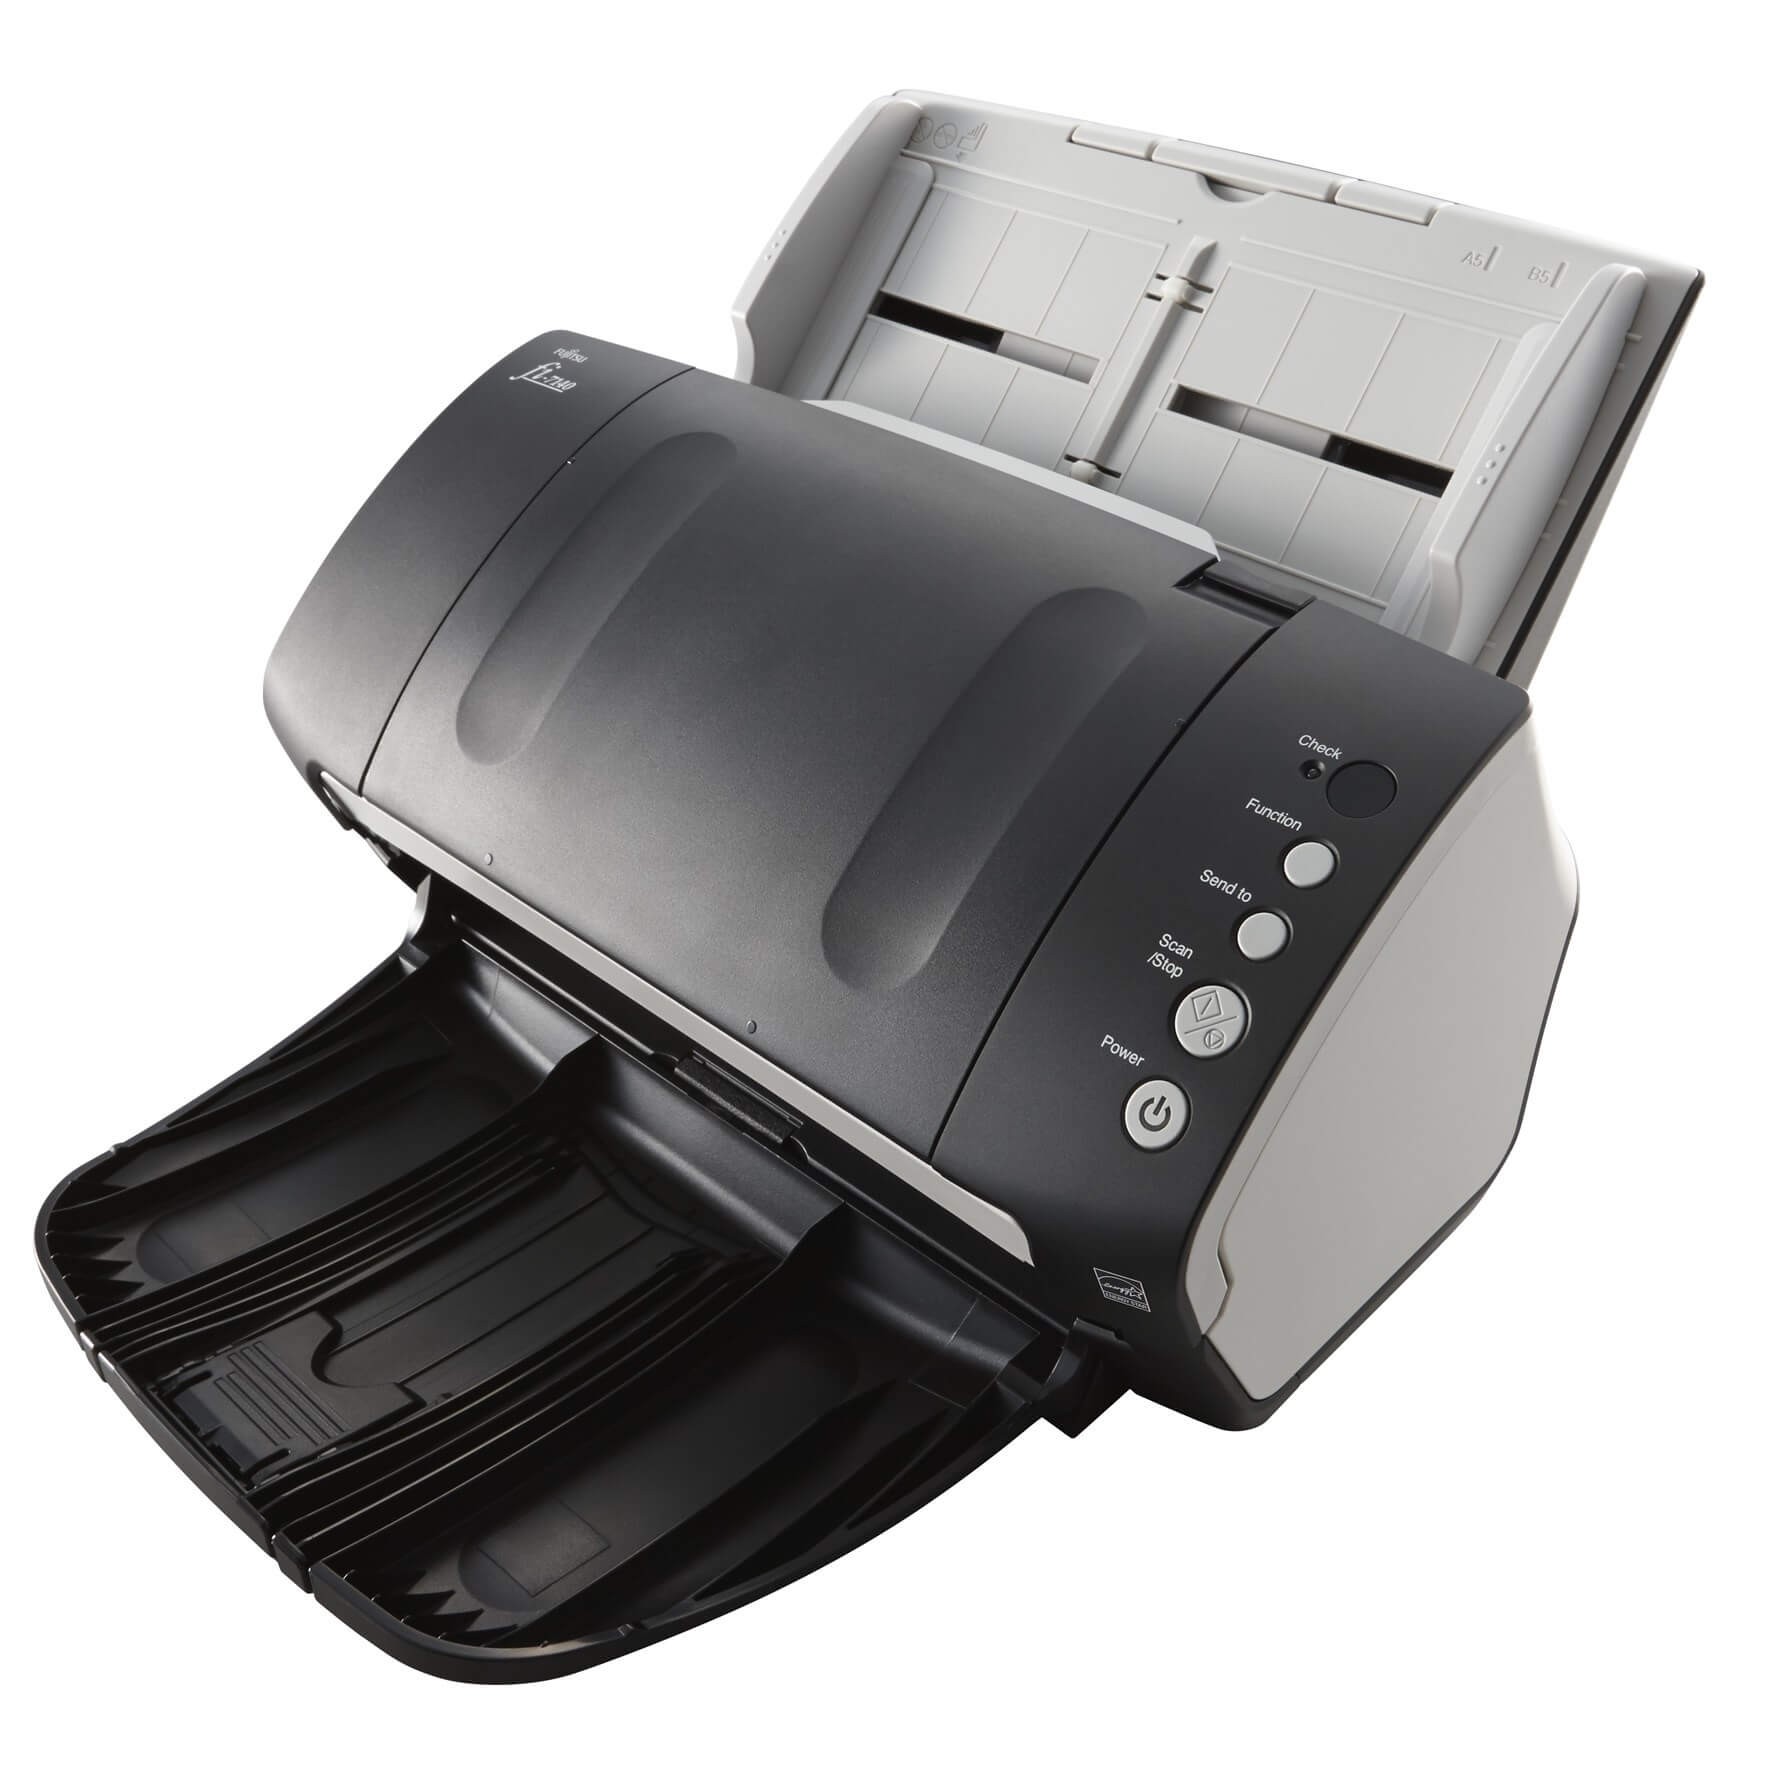 Scanner Fujitsu FI-7140 | ImpressorAjato